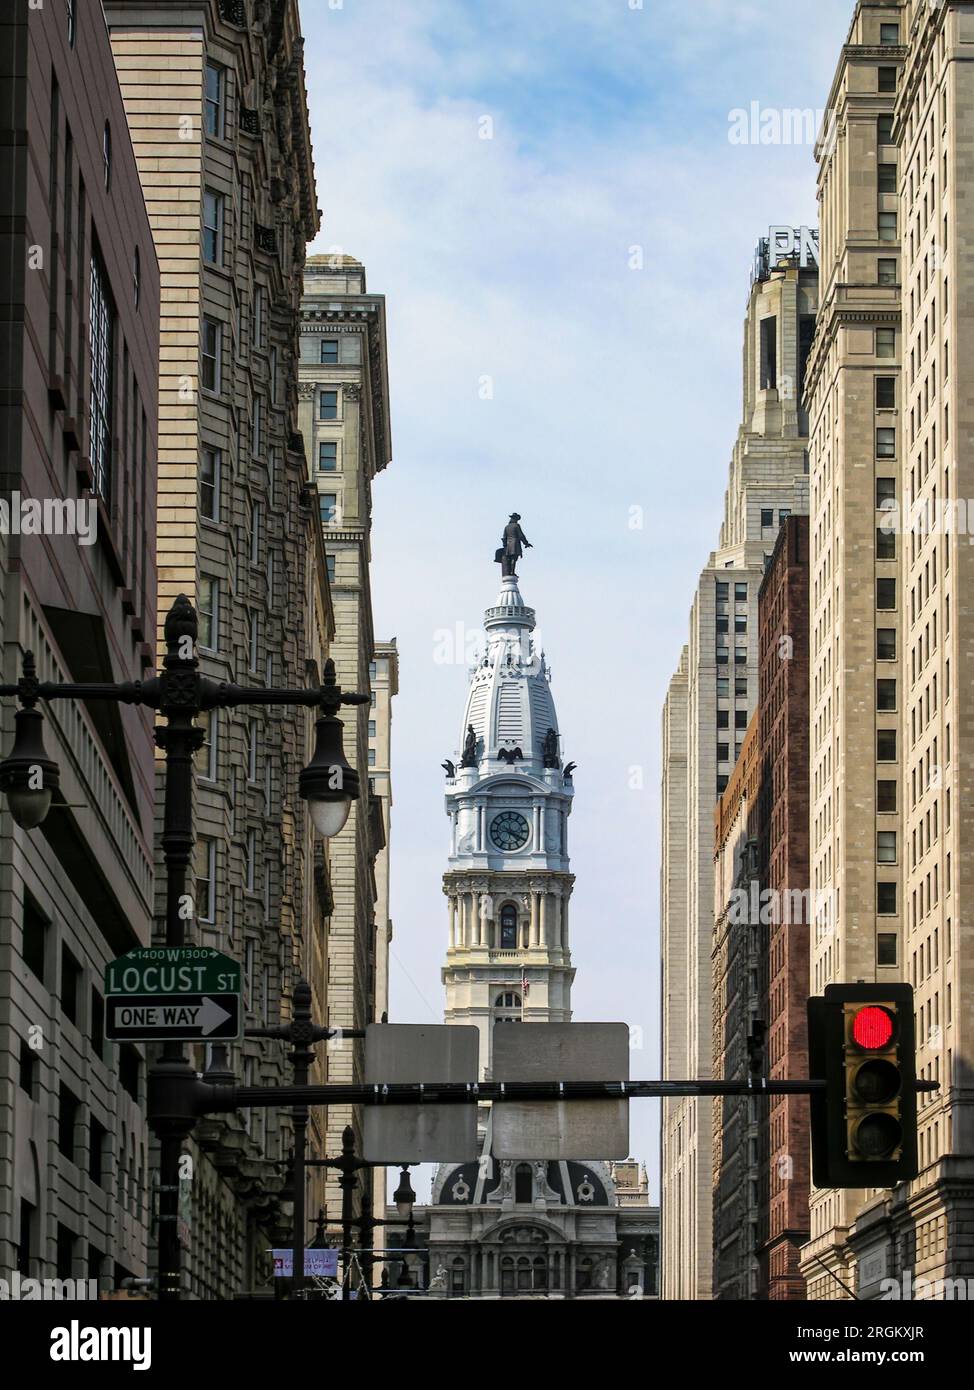 Une tour de l'horloge avec une statue de William Penn sur le dessus, située sur Locust Street à Philadelphie, Pennsylvanie. Banque D'Images